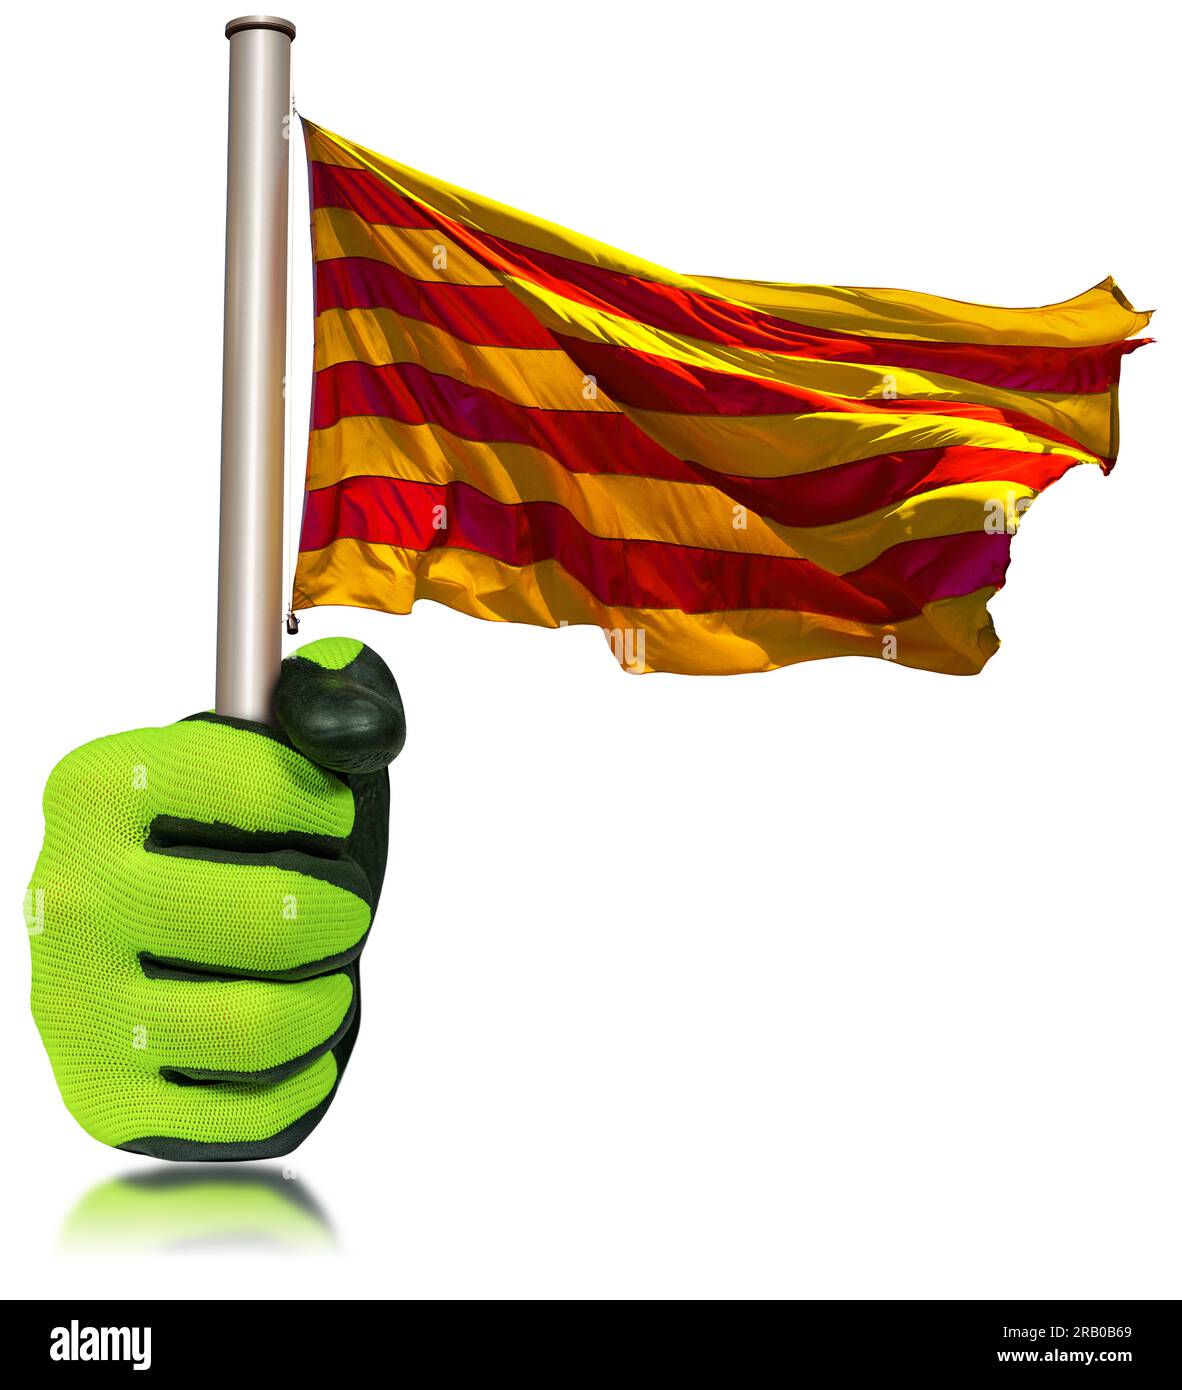 Ouvrier manuel avec des gants de travail de protection tenant un drapeau catalan (la Senyera) accroché sur le mât, isolé sur fond blanc. Espagne. Banque D'Images